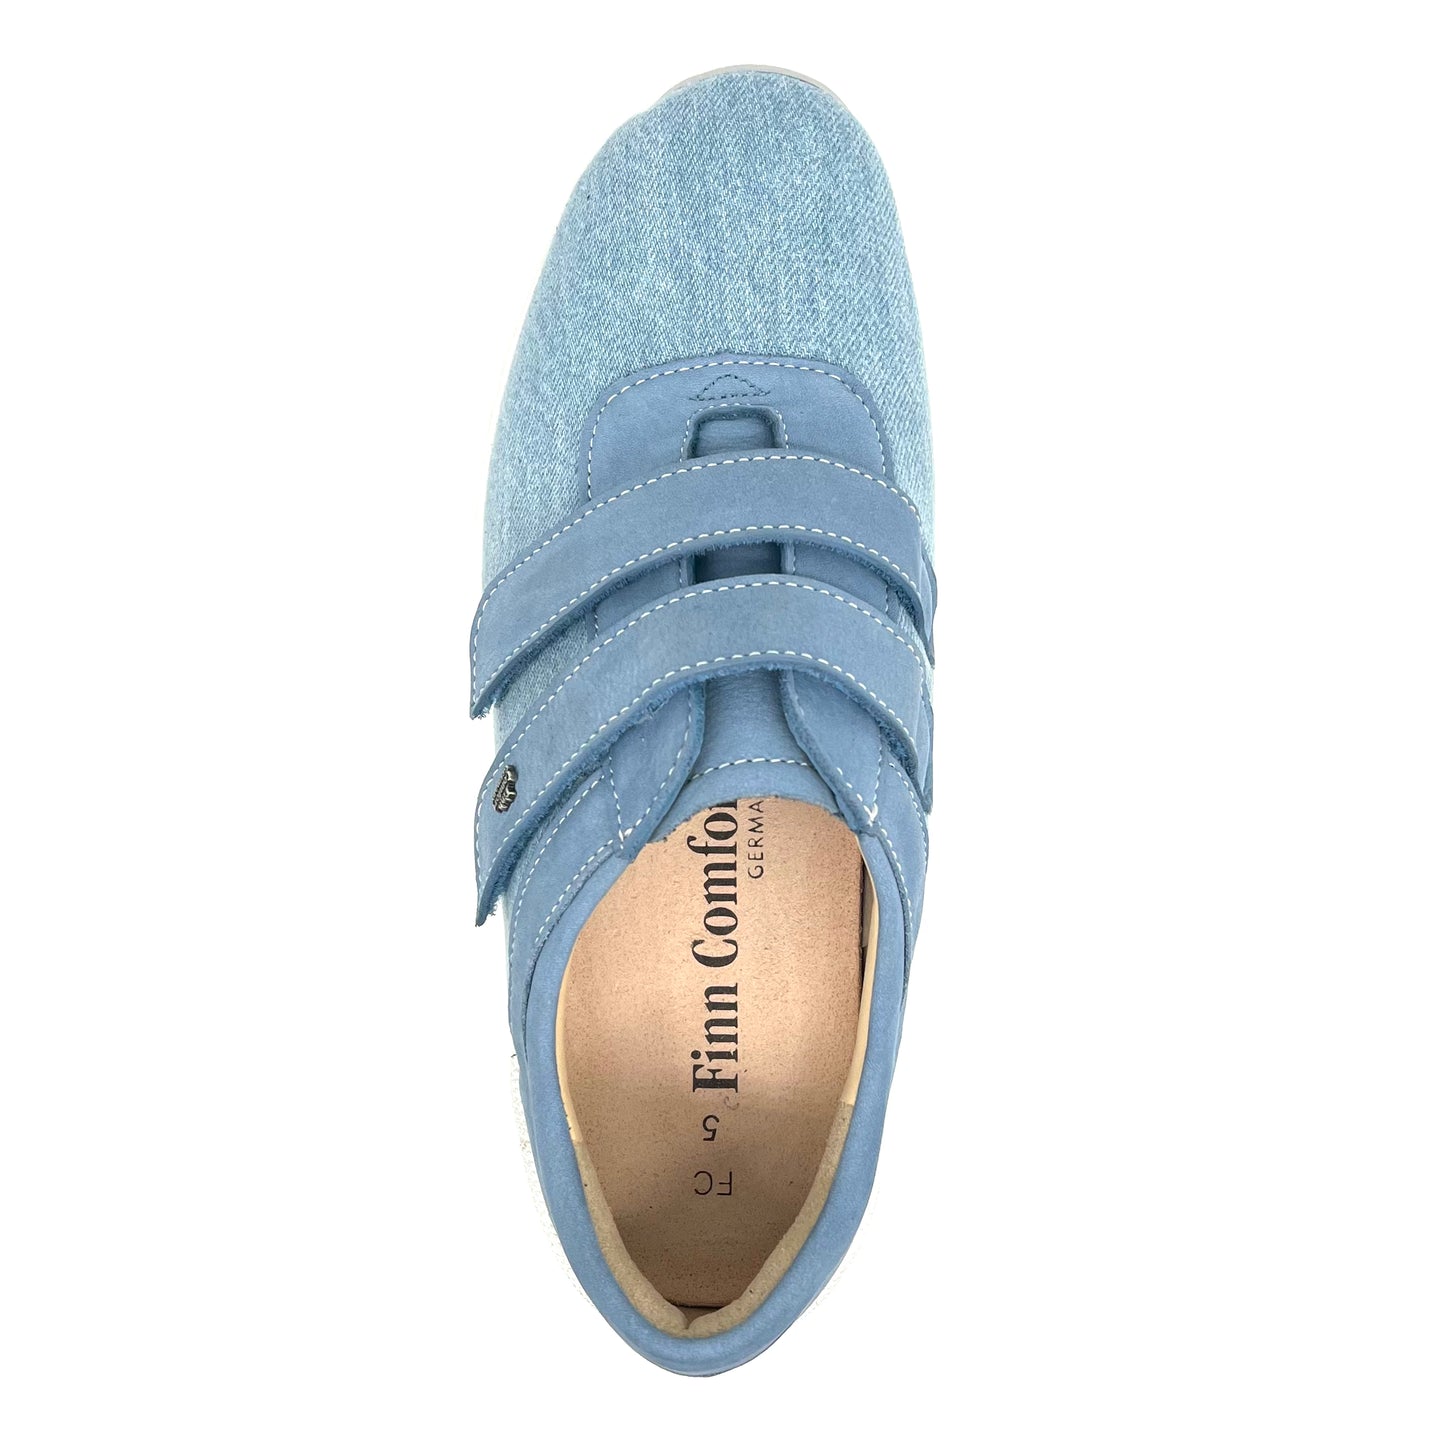 Damen Klett Halbschuh Sneakers Blau von Finn Comfort 17810